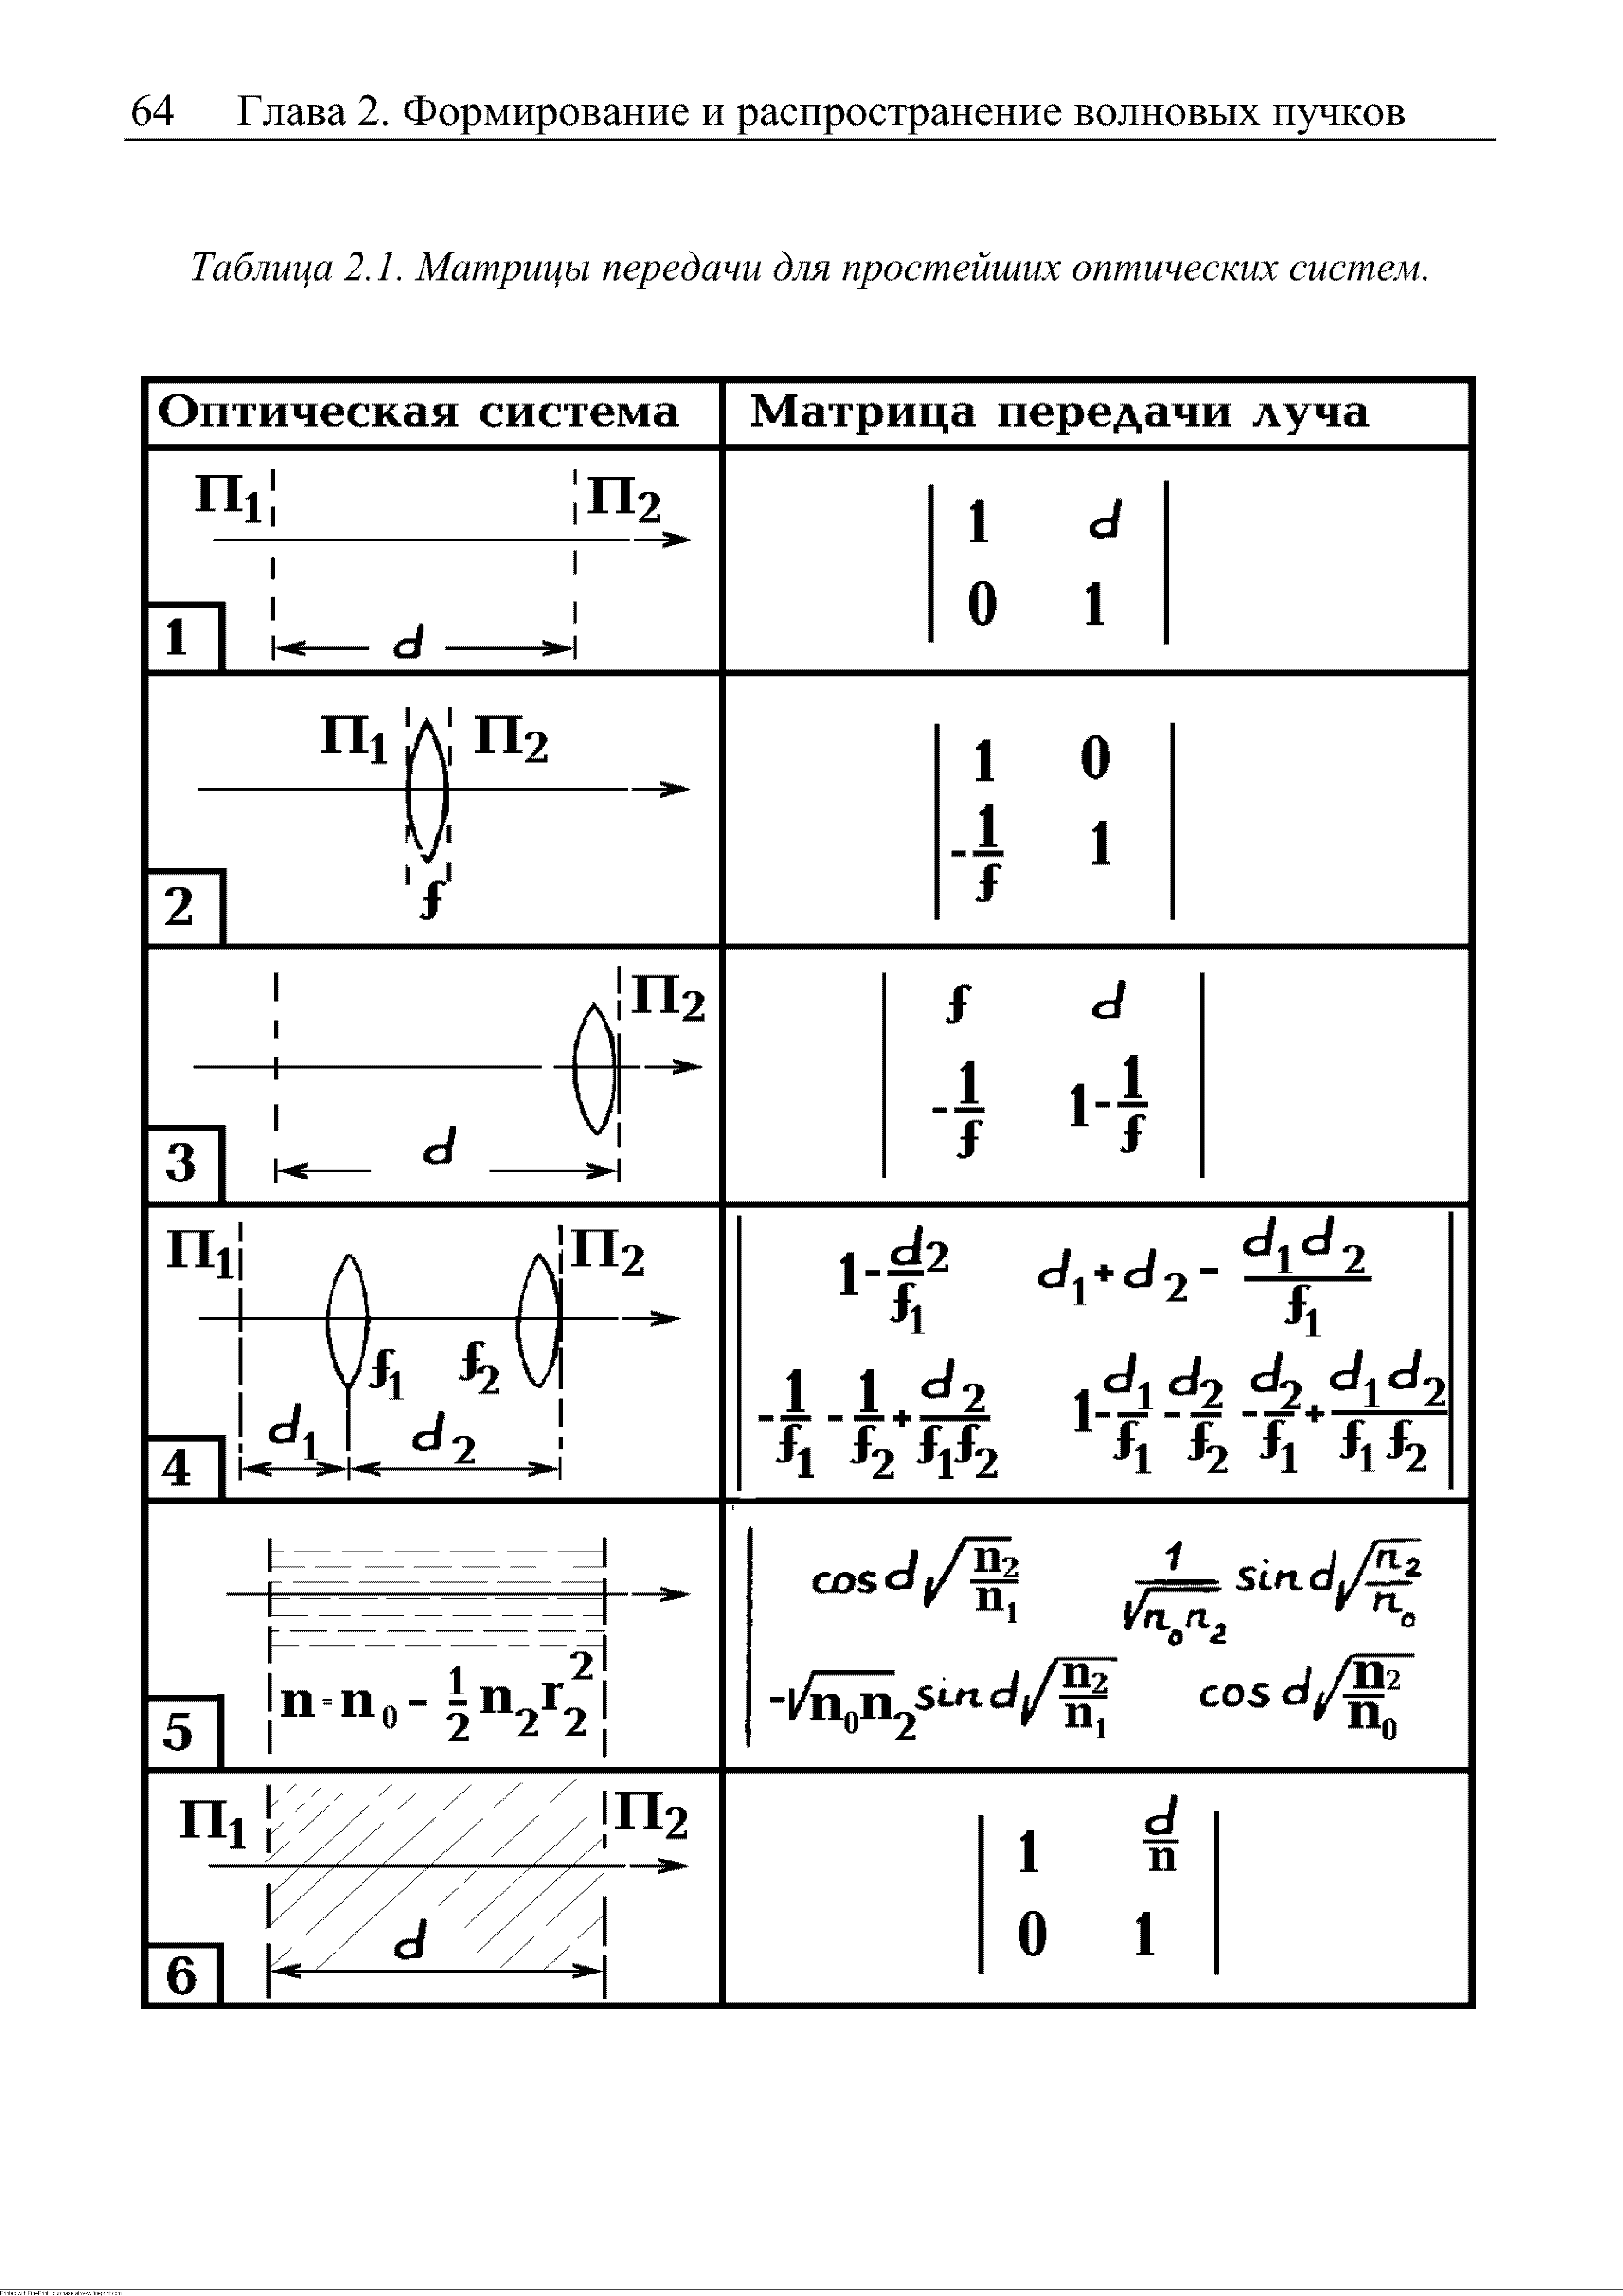 Таблица 2.1. Матрицы передачи для простейших оптических систем.
